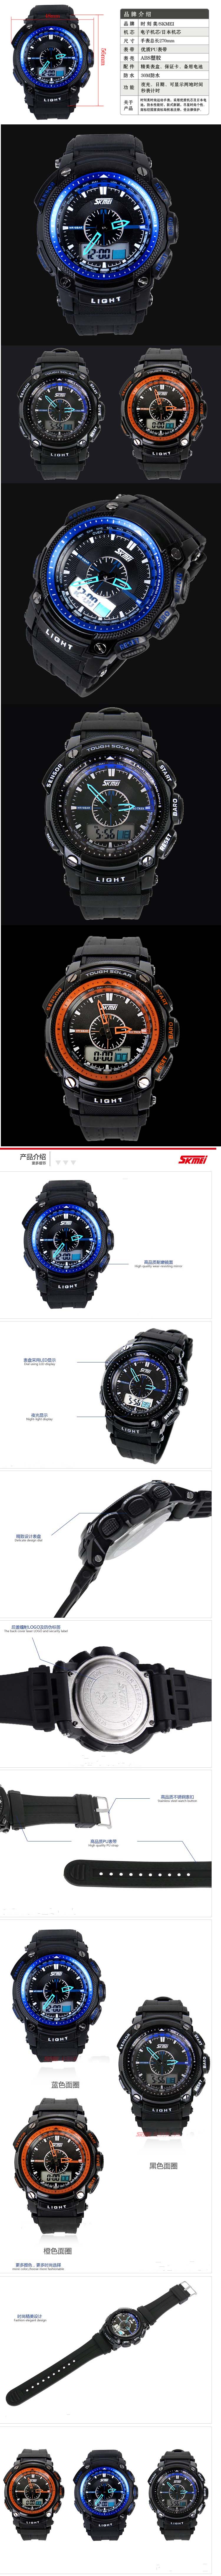 jual jam tangan pria fungsi digital merk skmei